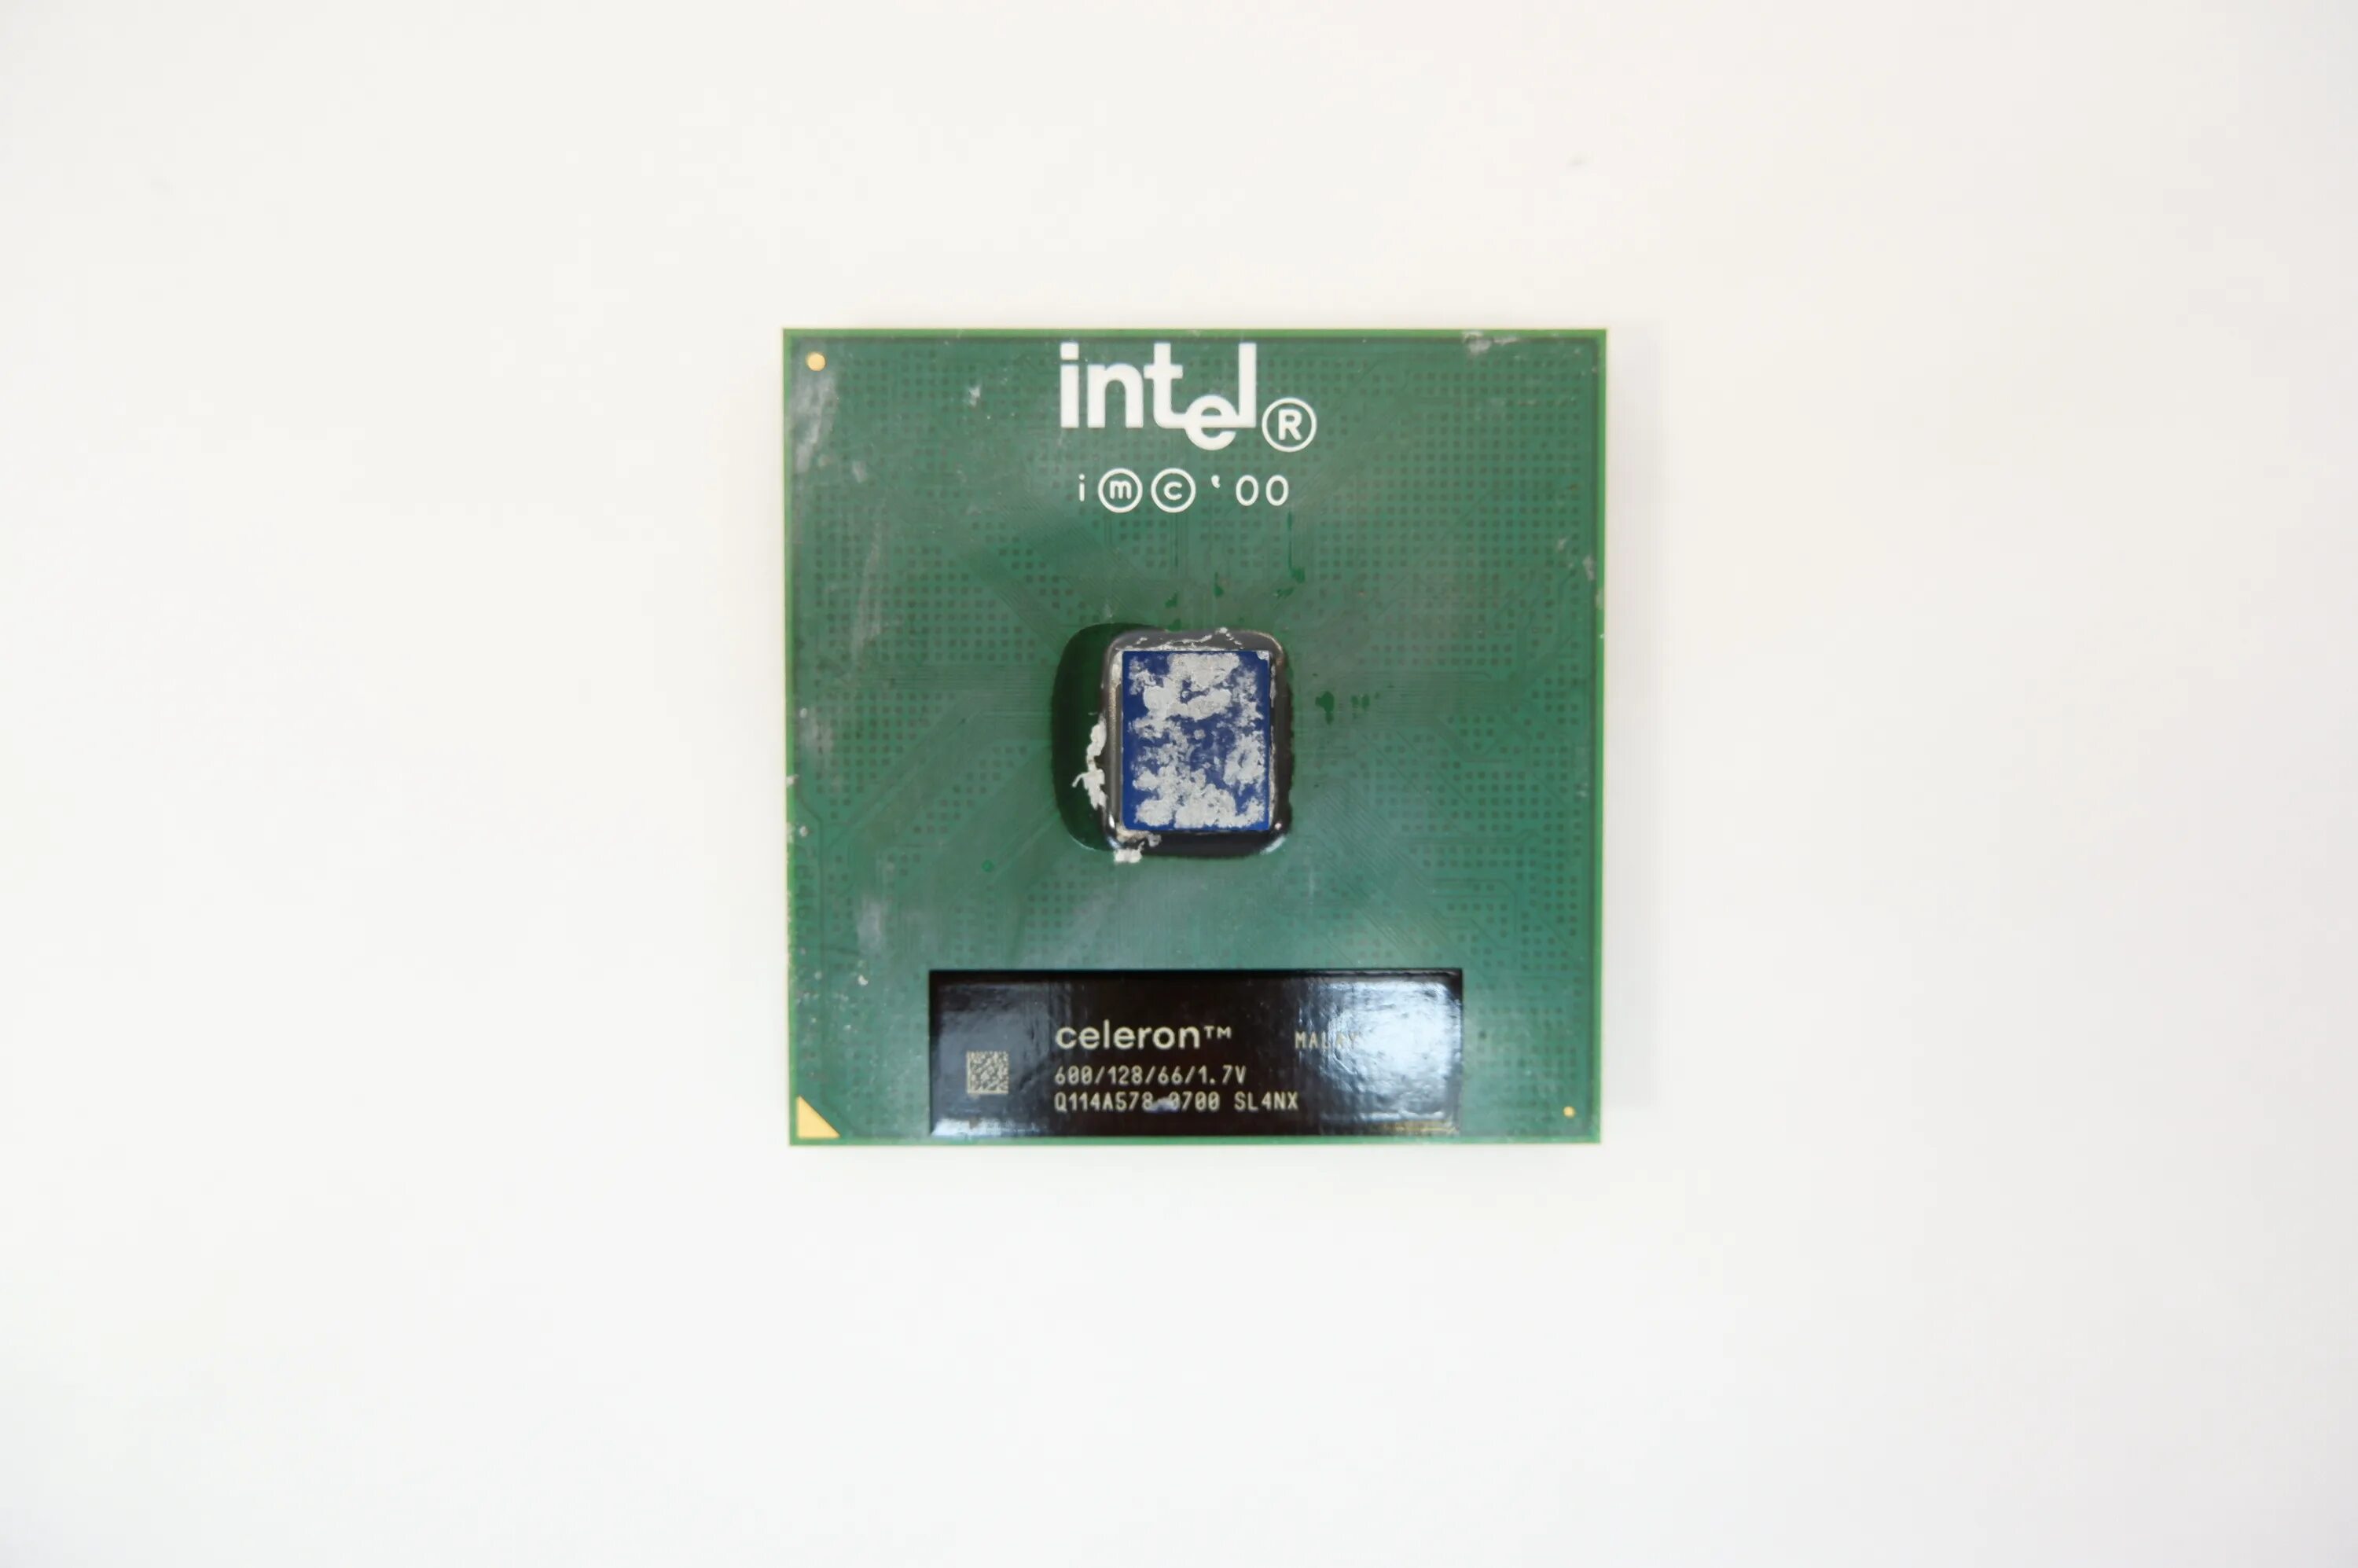 Intel celeron 600